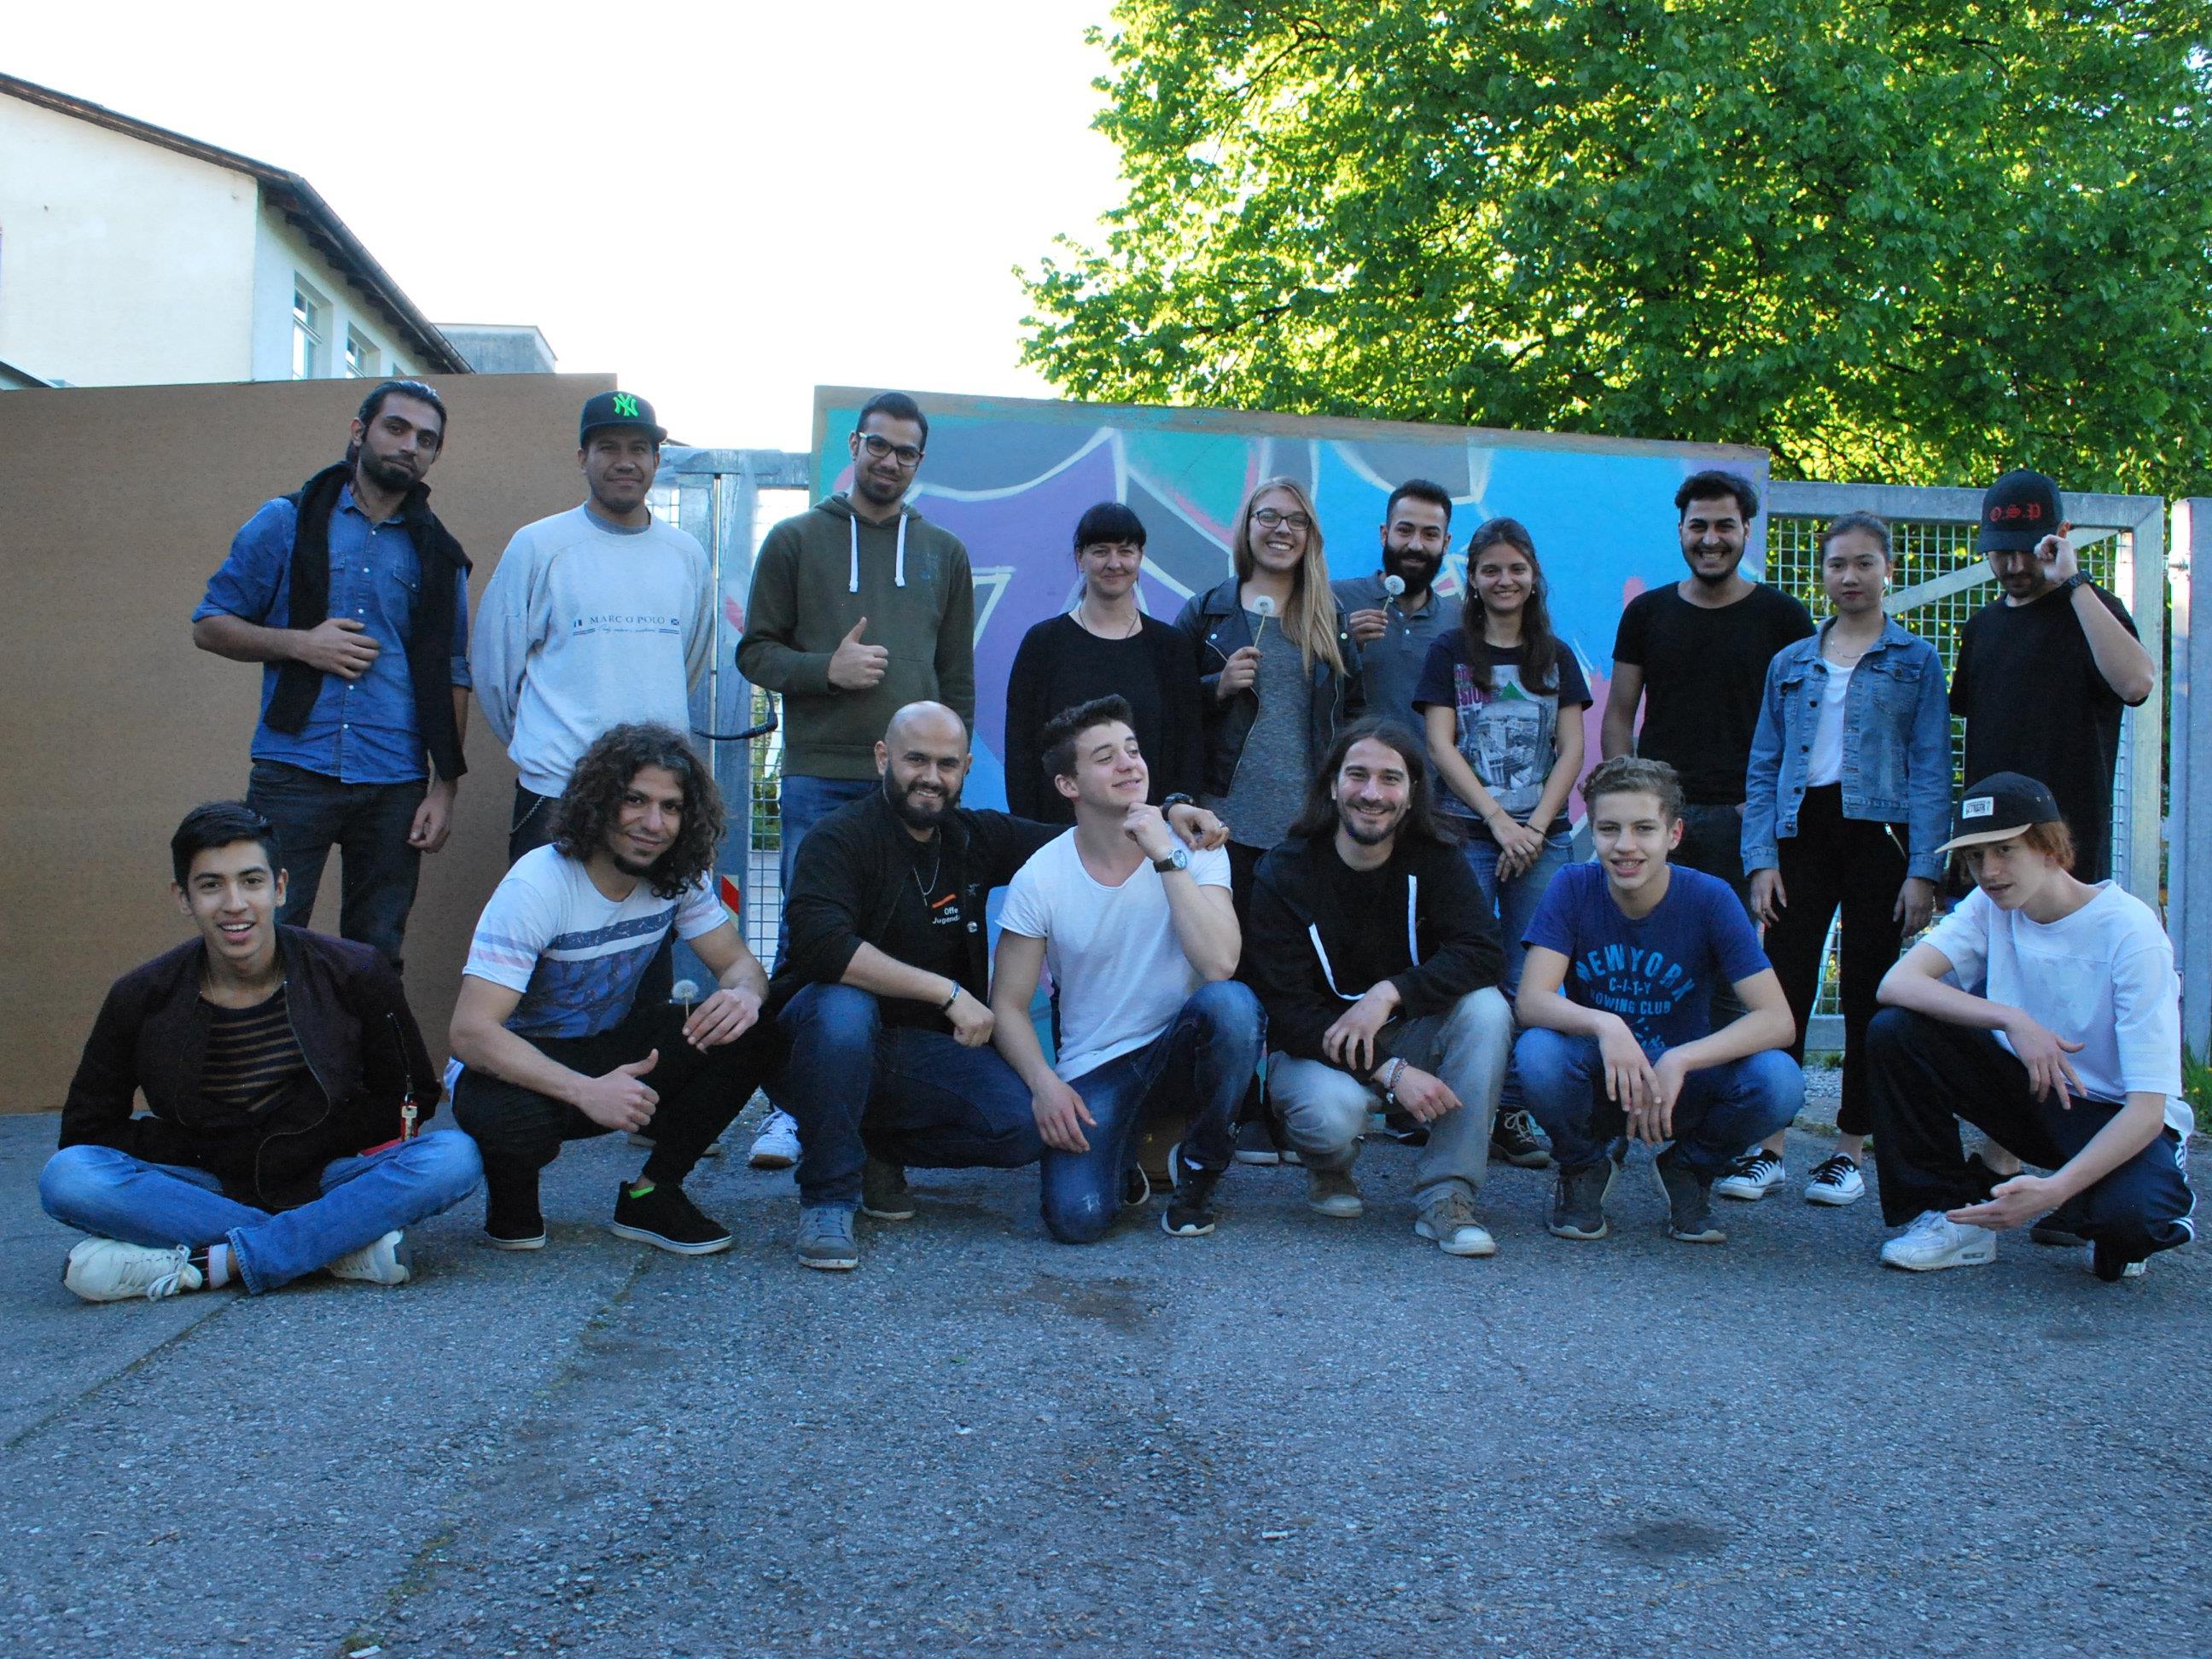 Besucher und Mitarbeiter vor der Filmvorführung "Freedom Writers" im Jugendzentrum Vismut.